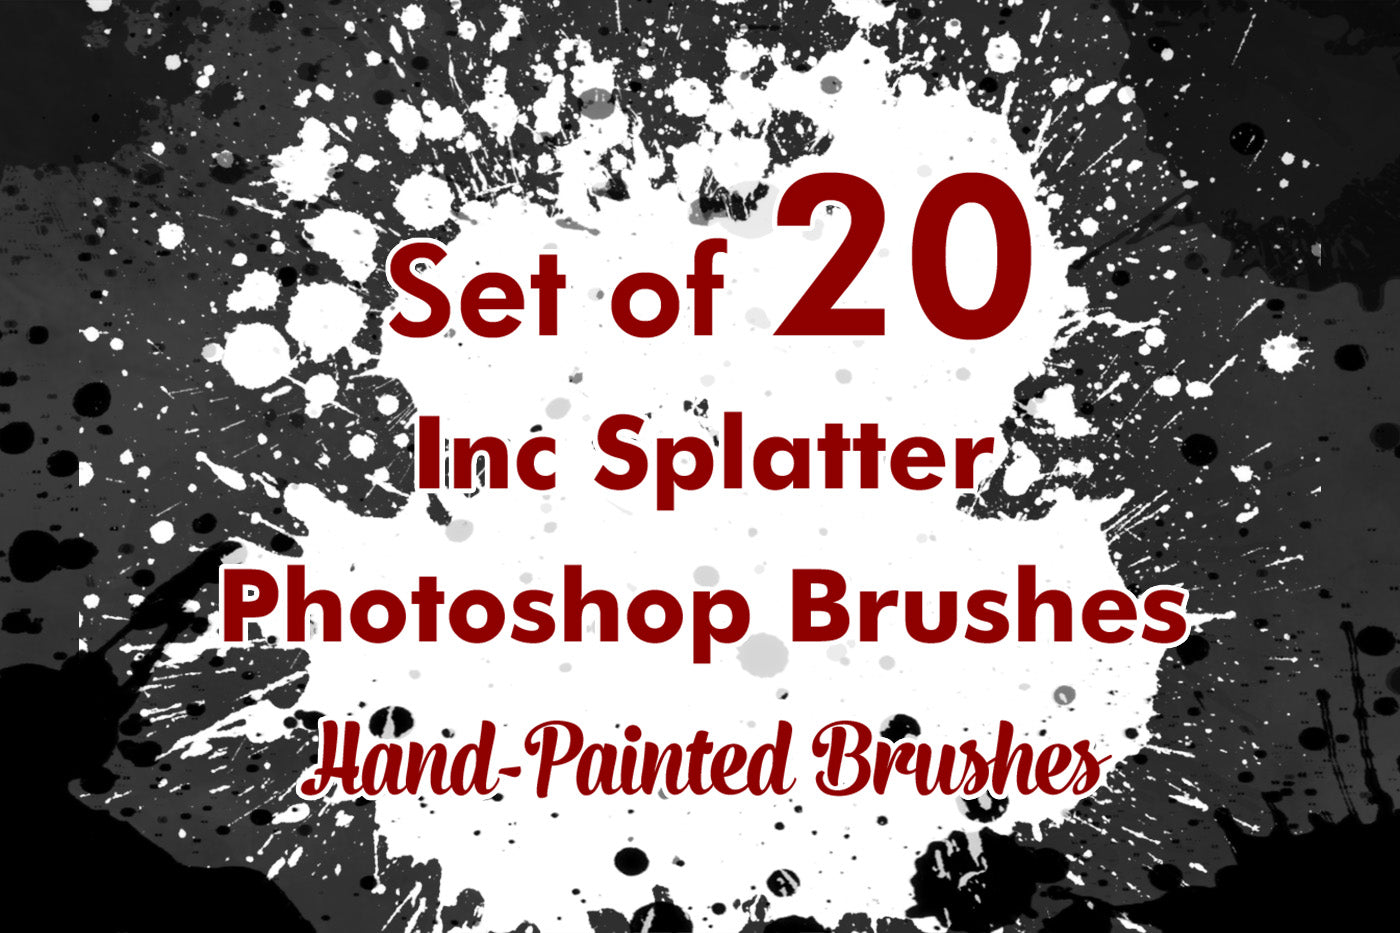 Inc Splatter - Photoshop Brushes